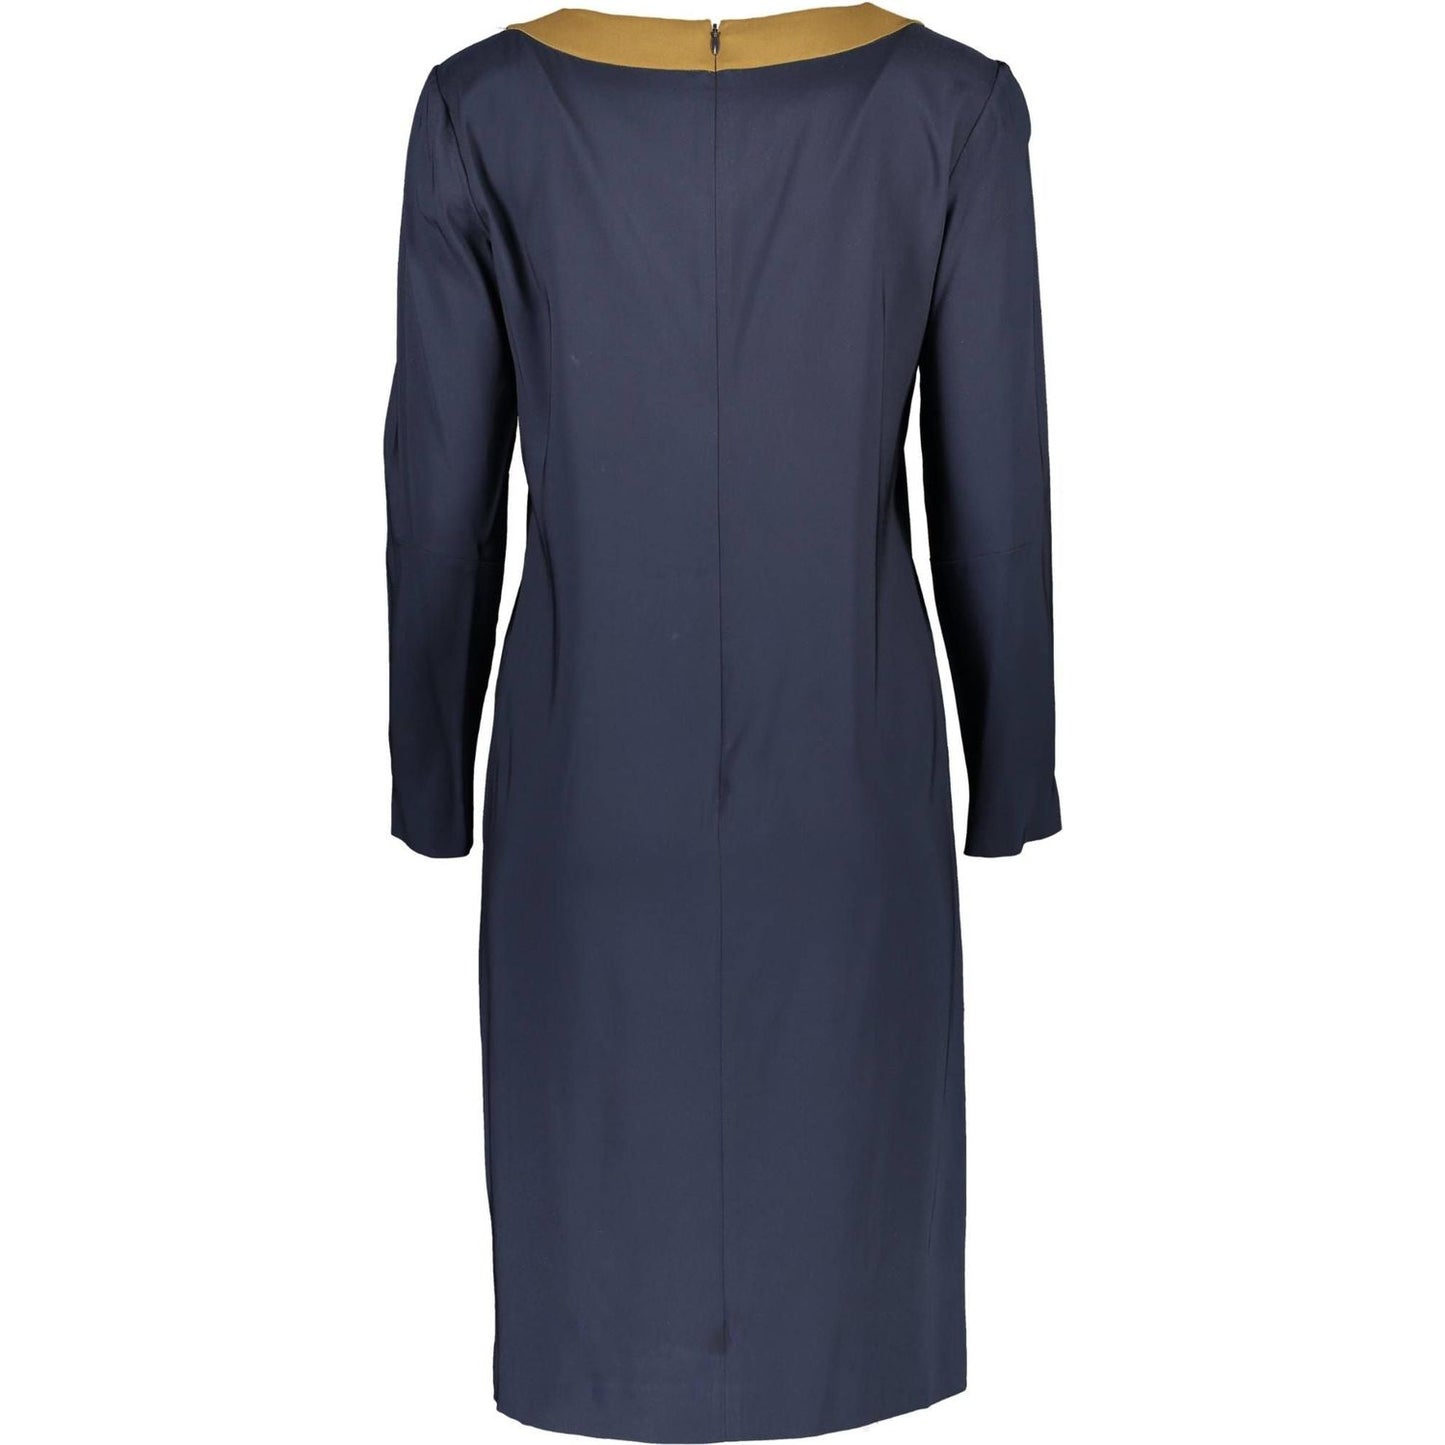 Gant Chic Blue Round Neck Dress with Contrasting Details chic-blue-round-neck-dress-with-contrasting-details